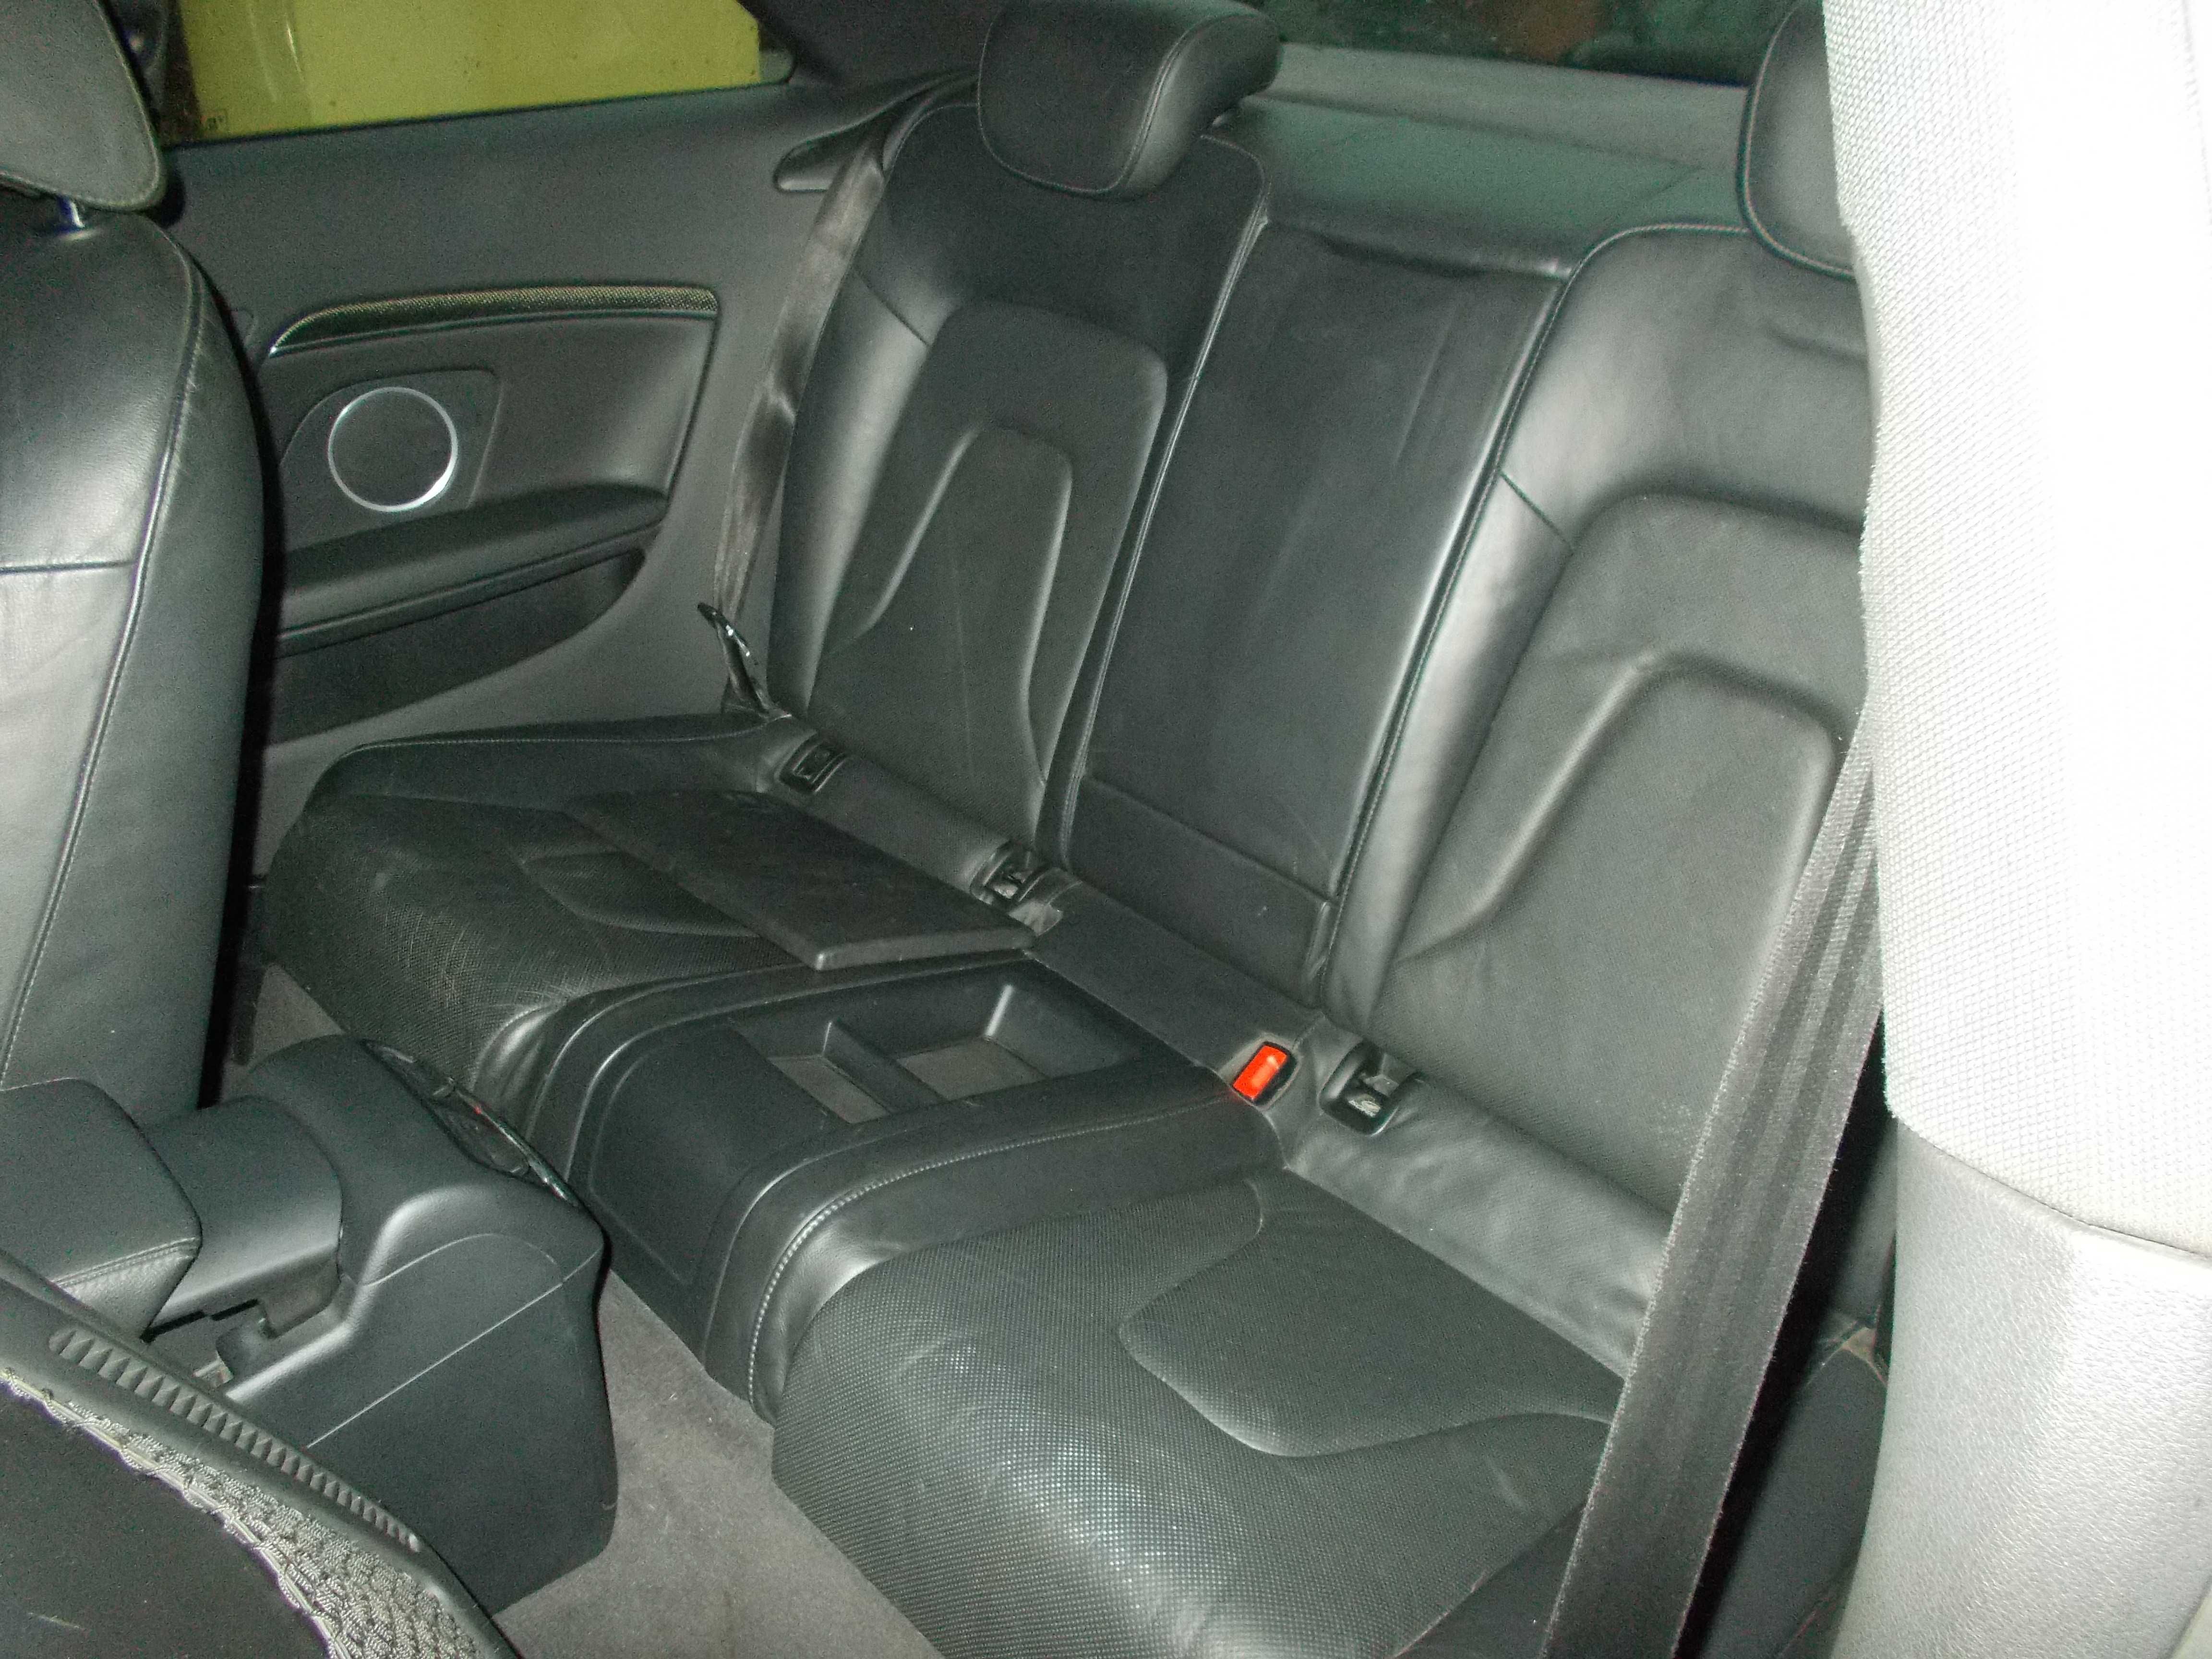 Audi S5 4,2 V8 2008 rok 345 kM automat zarejestrowany Quattro